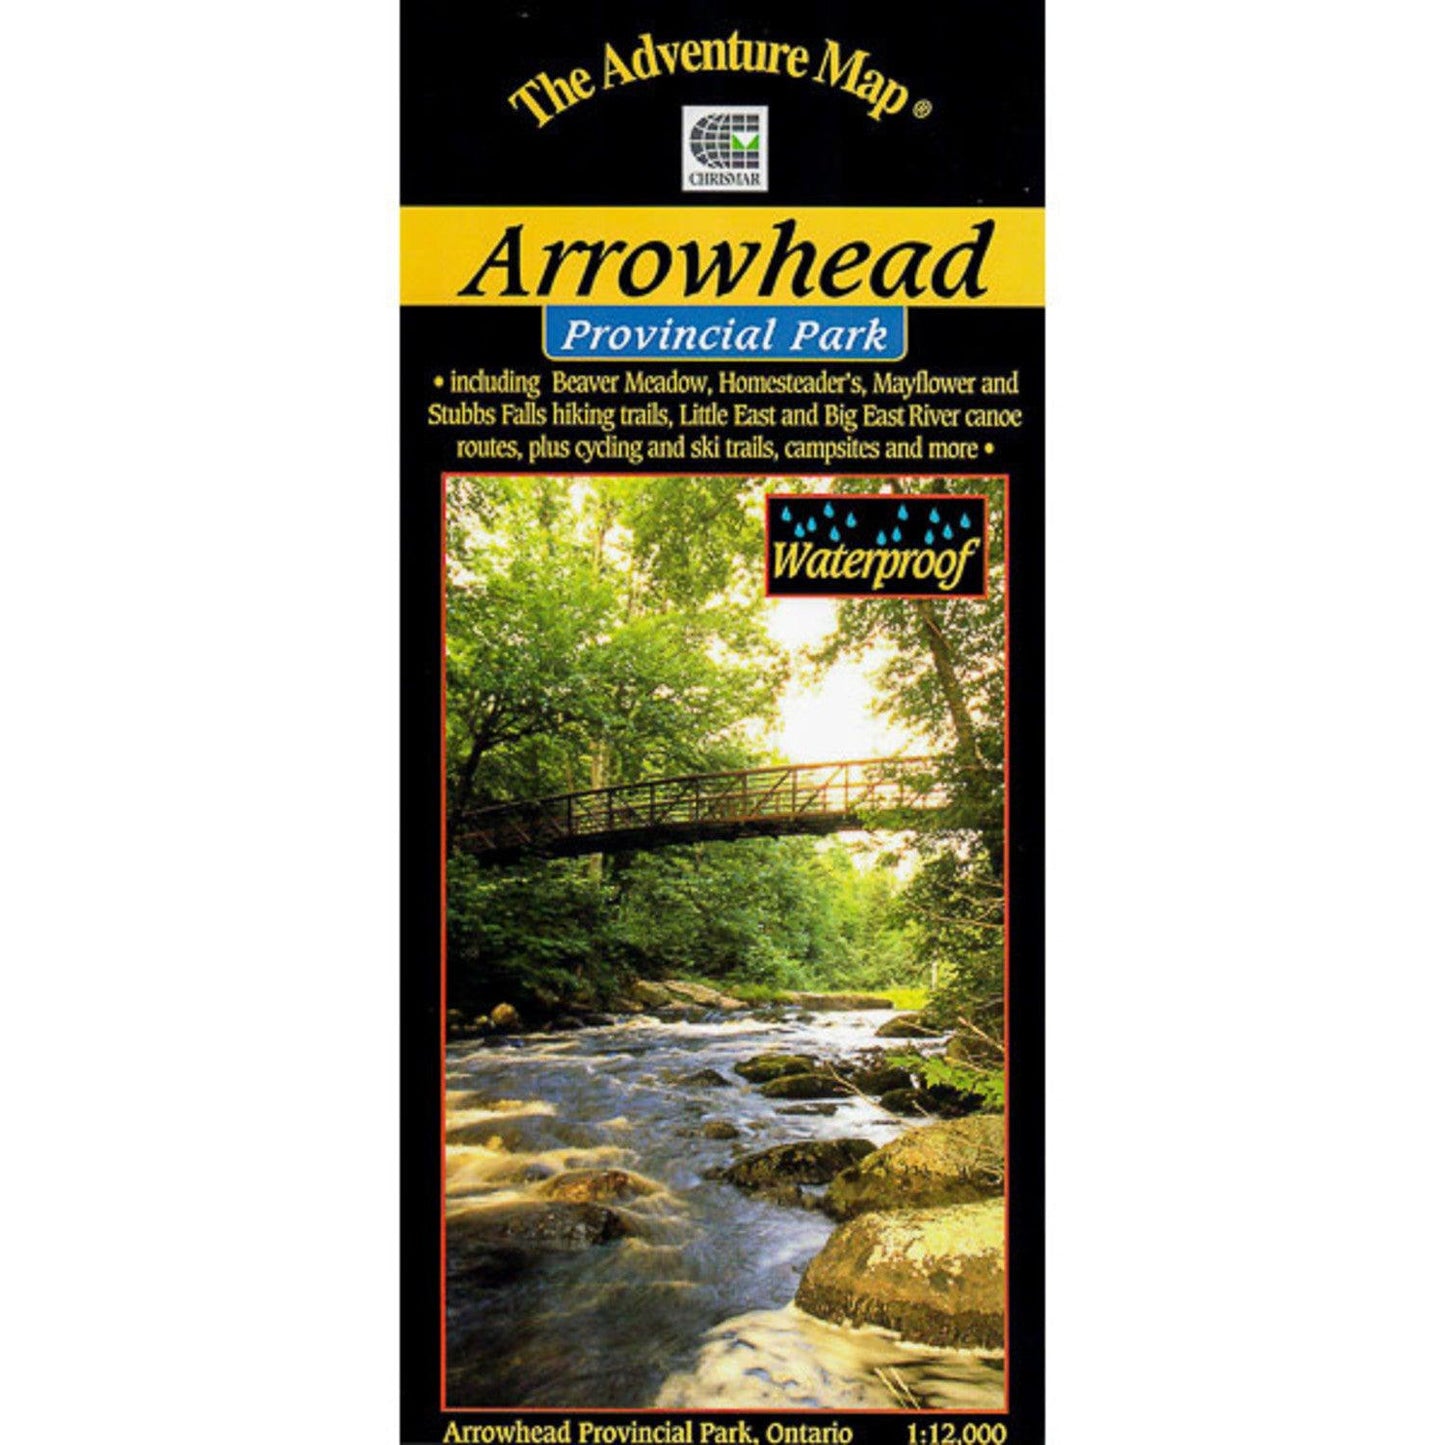 Arrowhead Provincial Park